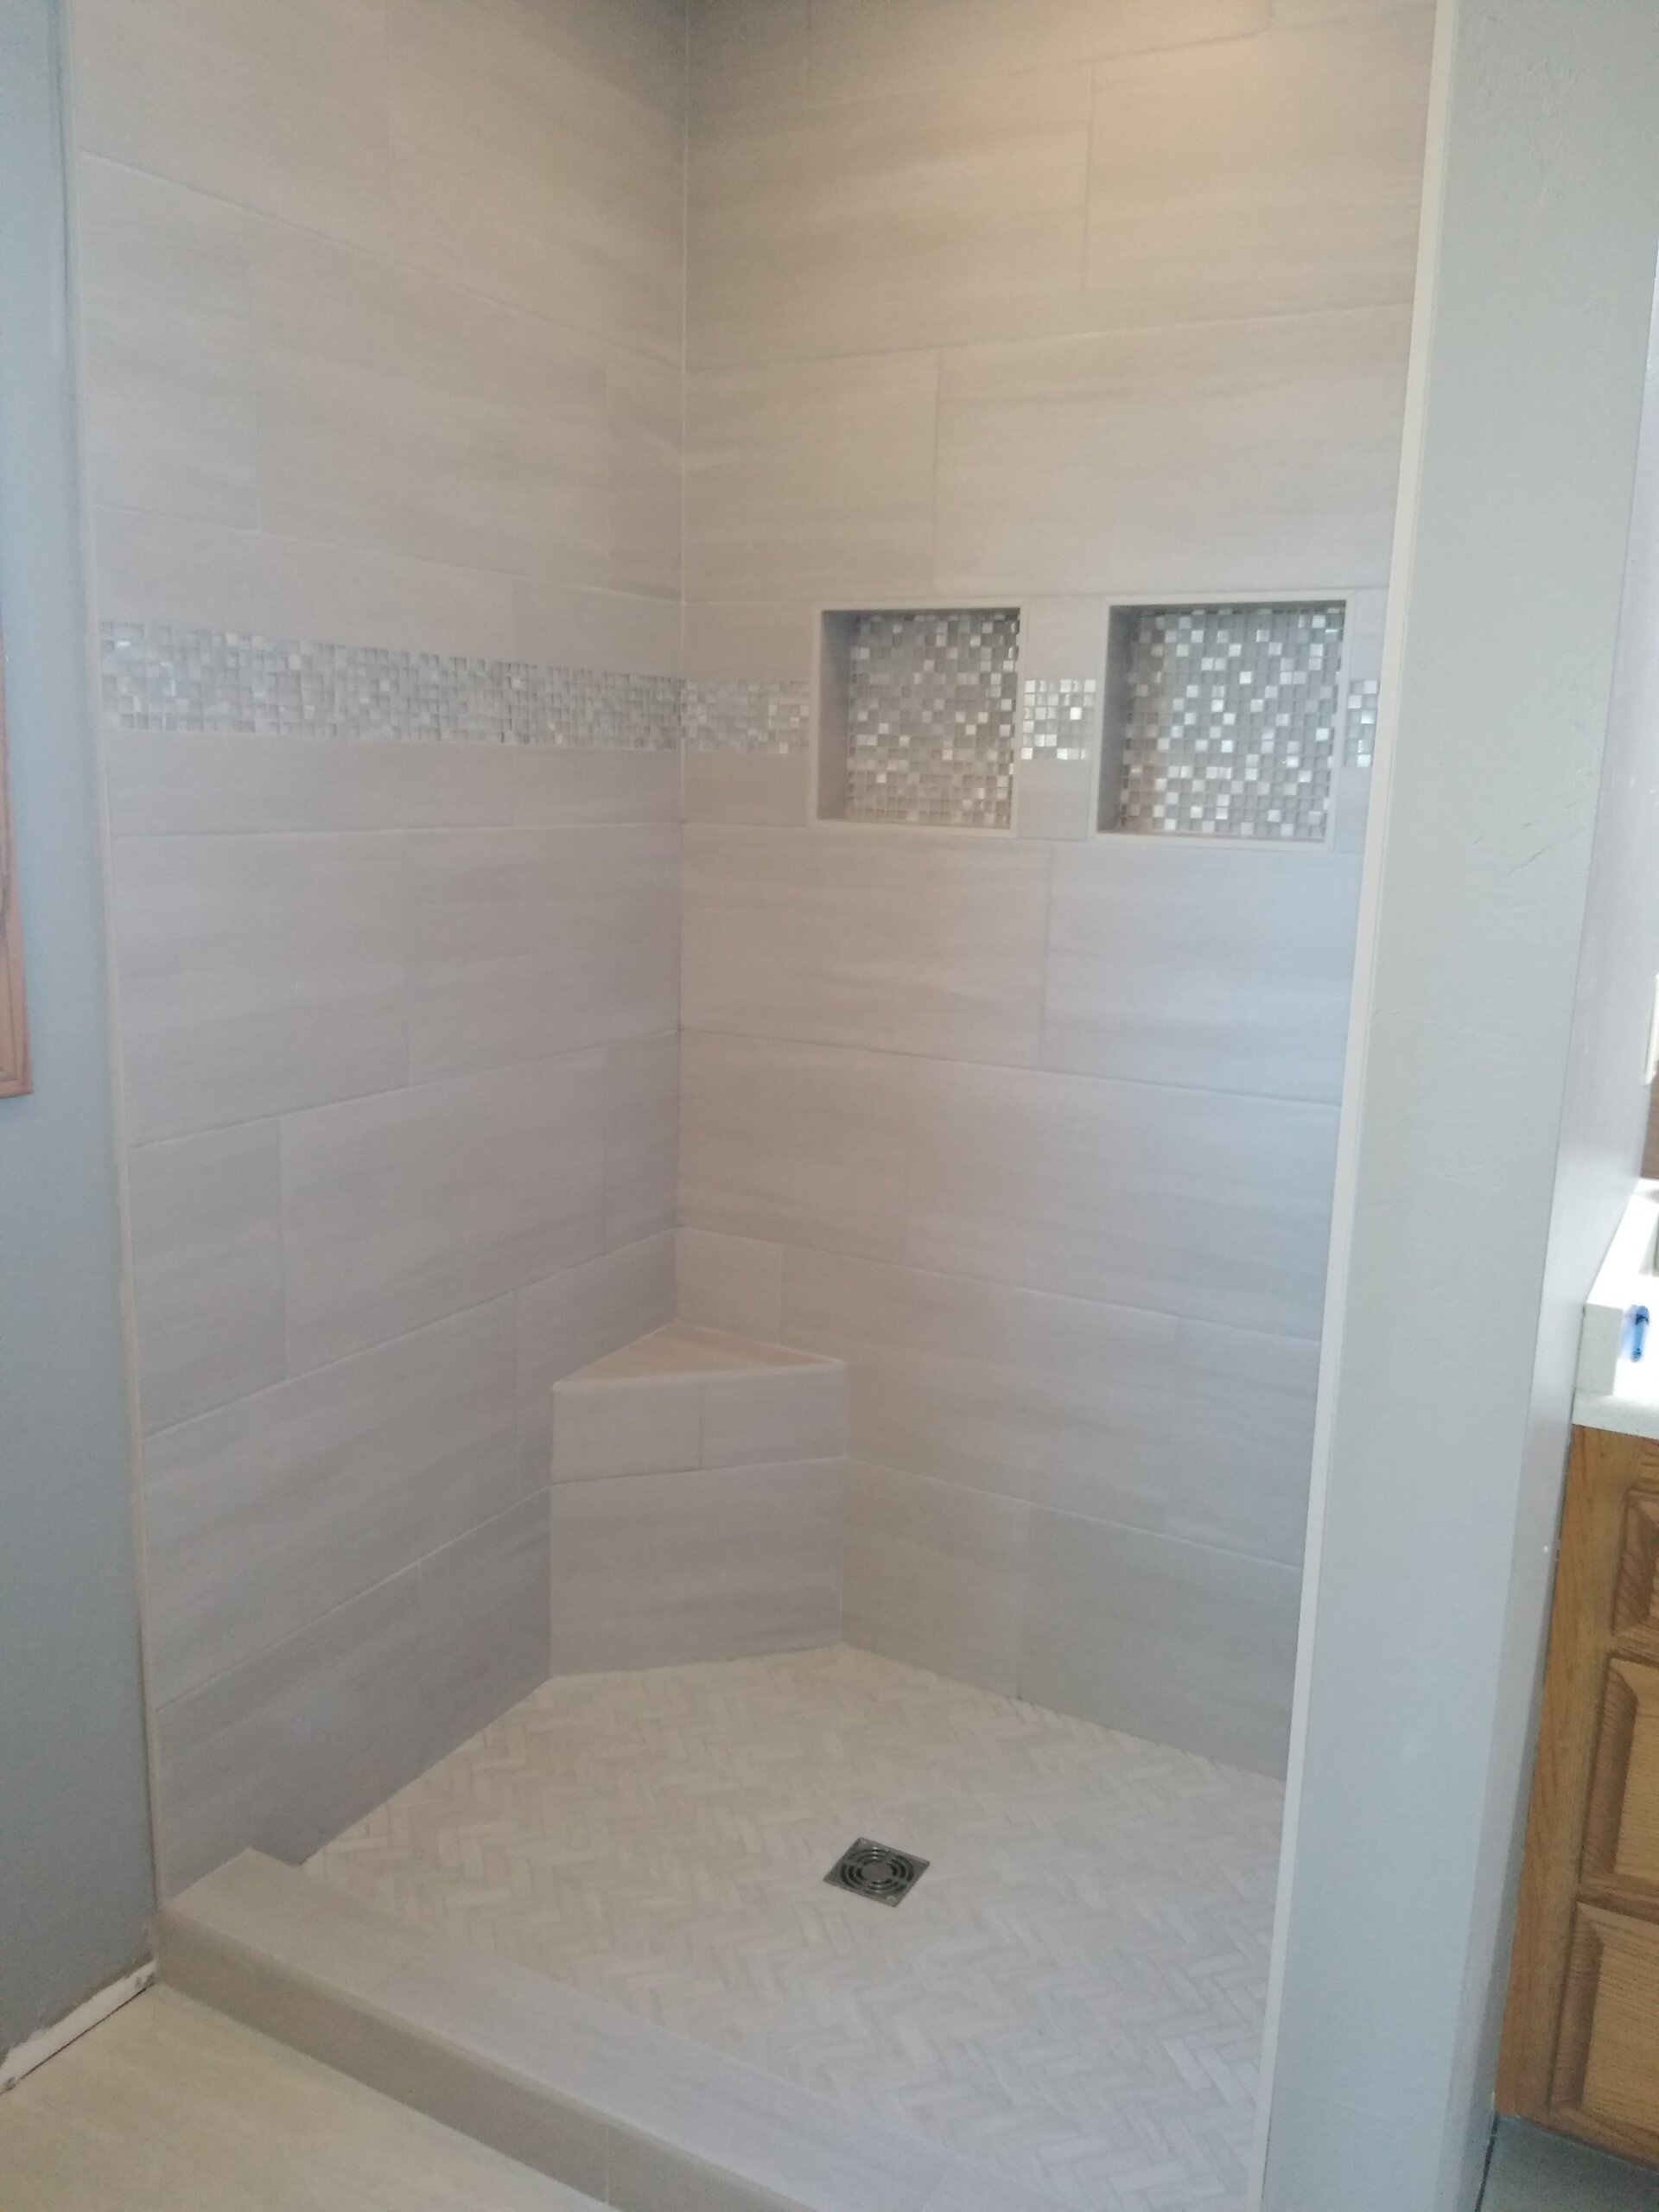 Bathroom Contractor, Kitchen Contractor, General Contractor, Flooring  Installer — The Galleria of Tile